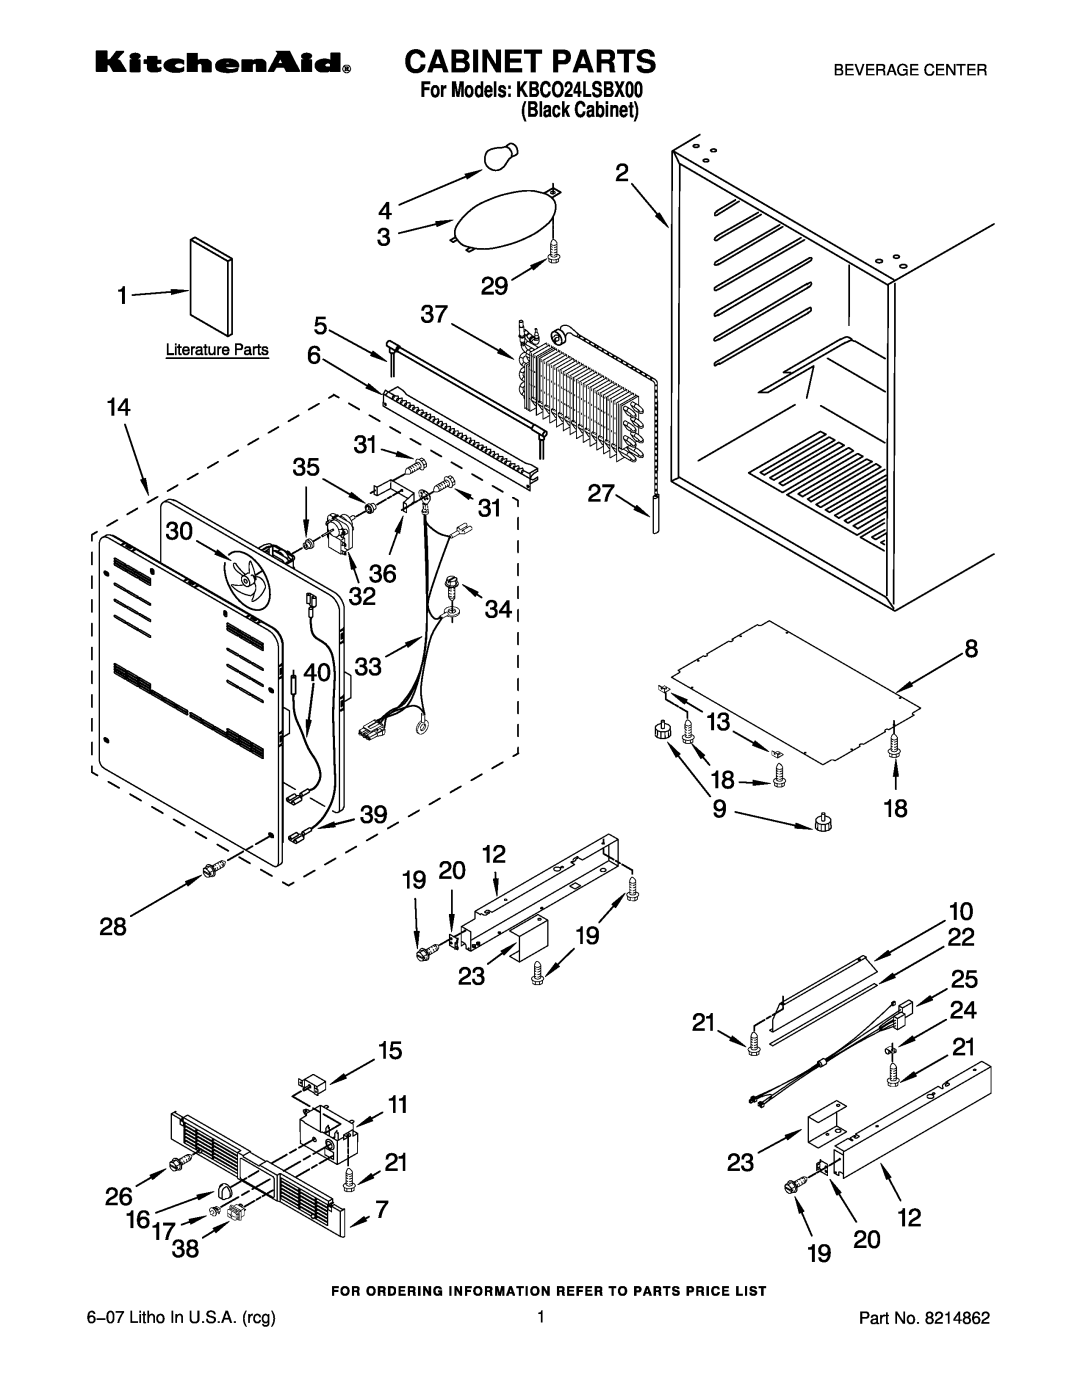 KitchenAid manual Cabinet Parts, 6−07 Litho In U.S.A. rcg, For Models KBCO24LSBX00 Black Cabinet, Beverage Center 